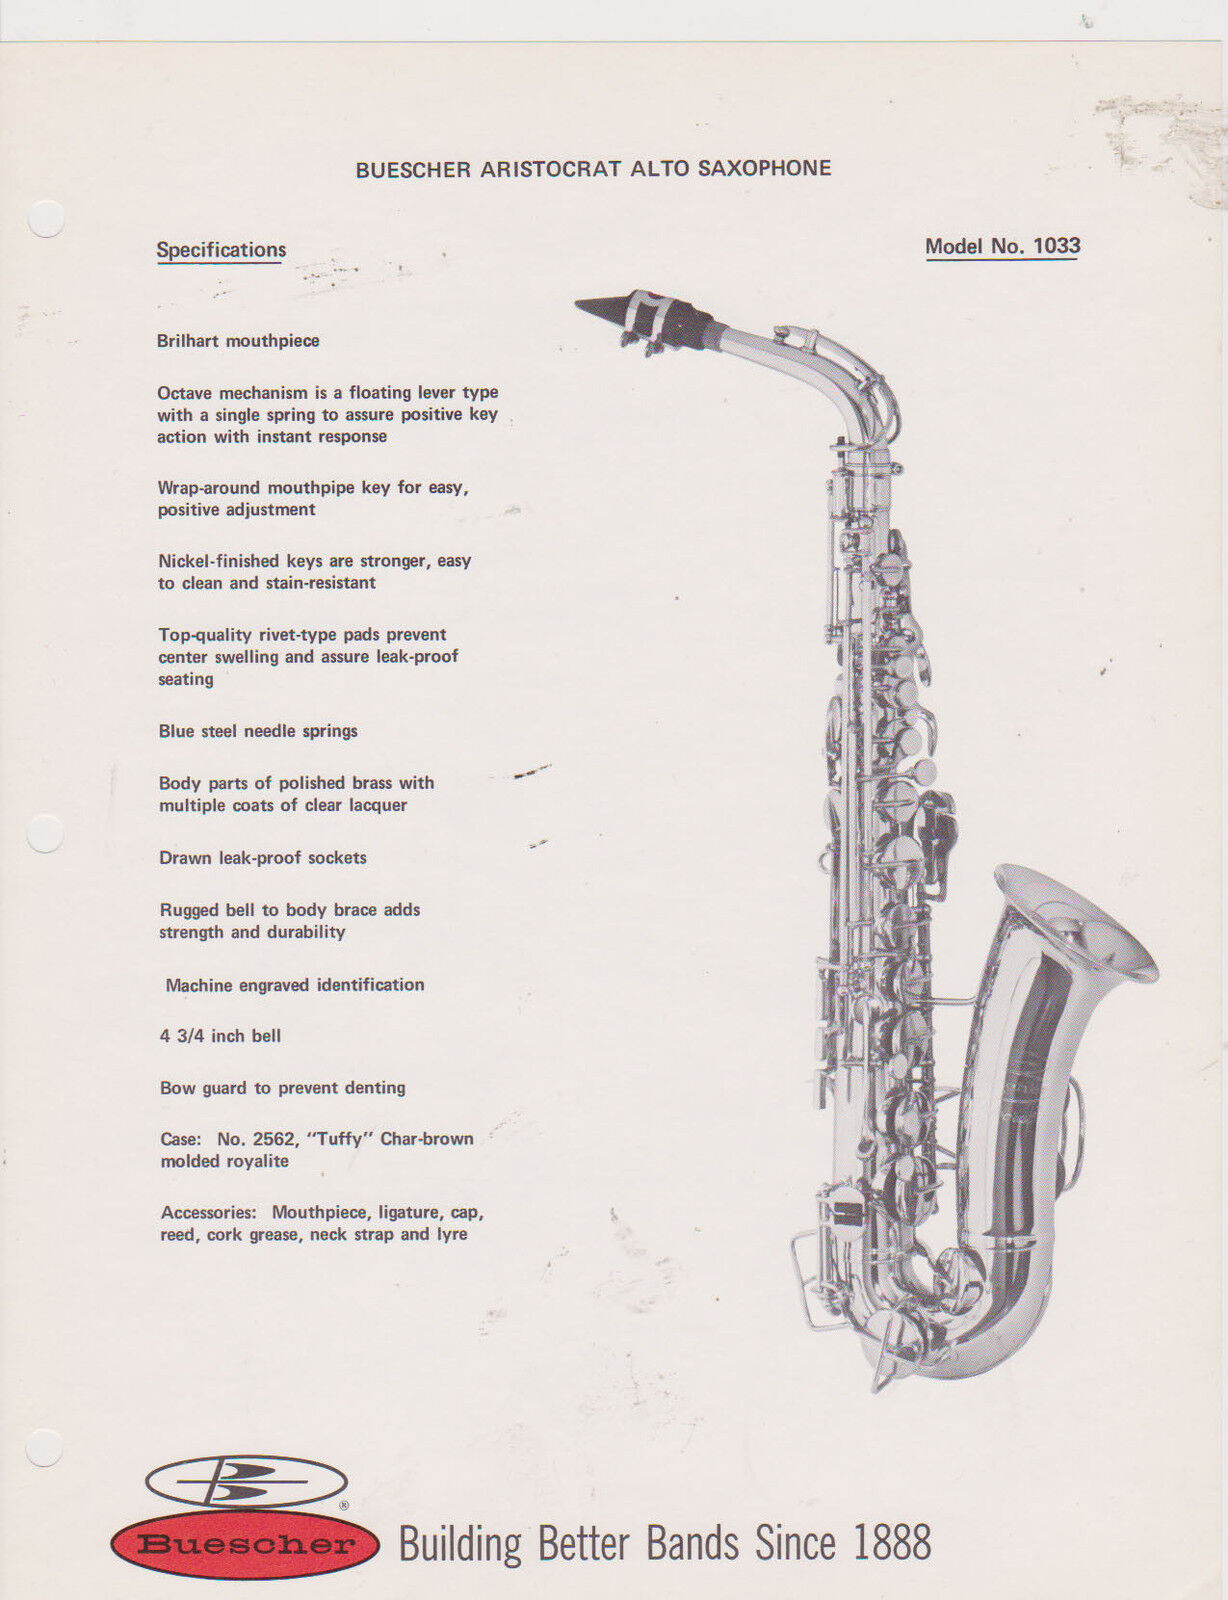 AD SHEET #2513 - 1970s BUESCHER MUSICAL INSTRUMENT - ARISTOCRAT ALTO SAX #1033